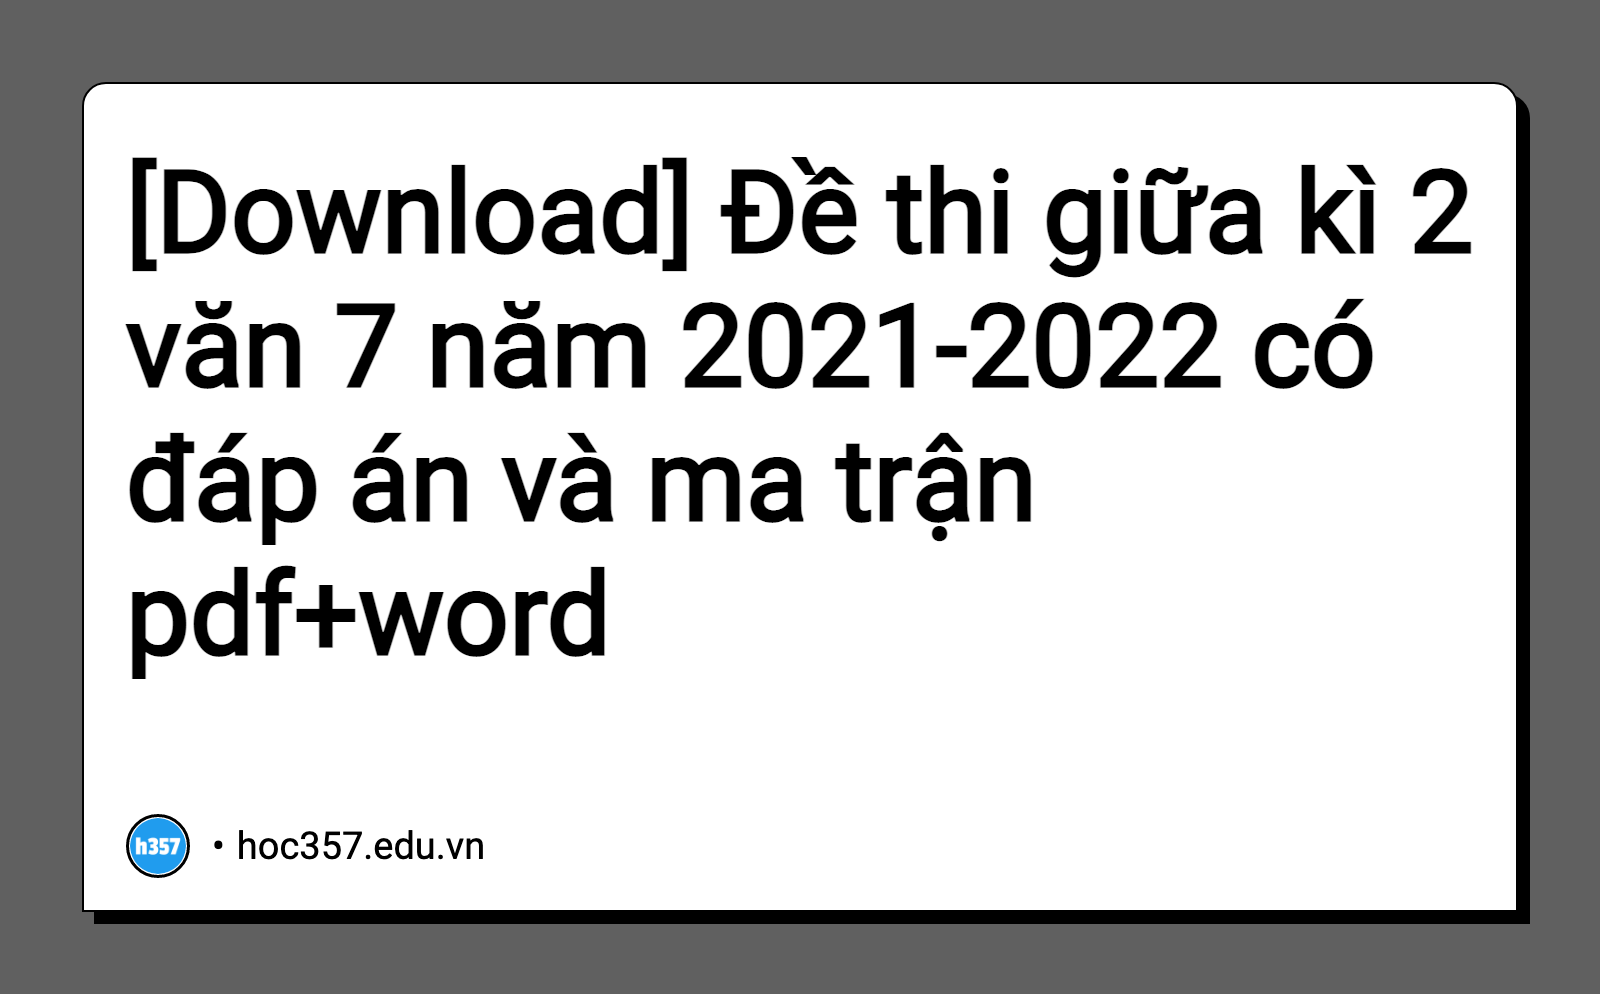 Hình minh họa Đề thi giữa kì 2 văn 7 năm 2021-2022 có đáp án và ma trận